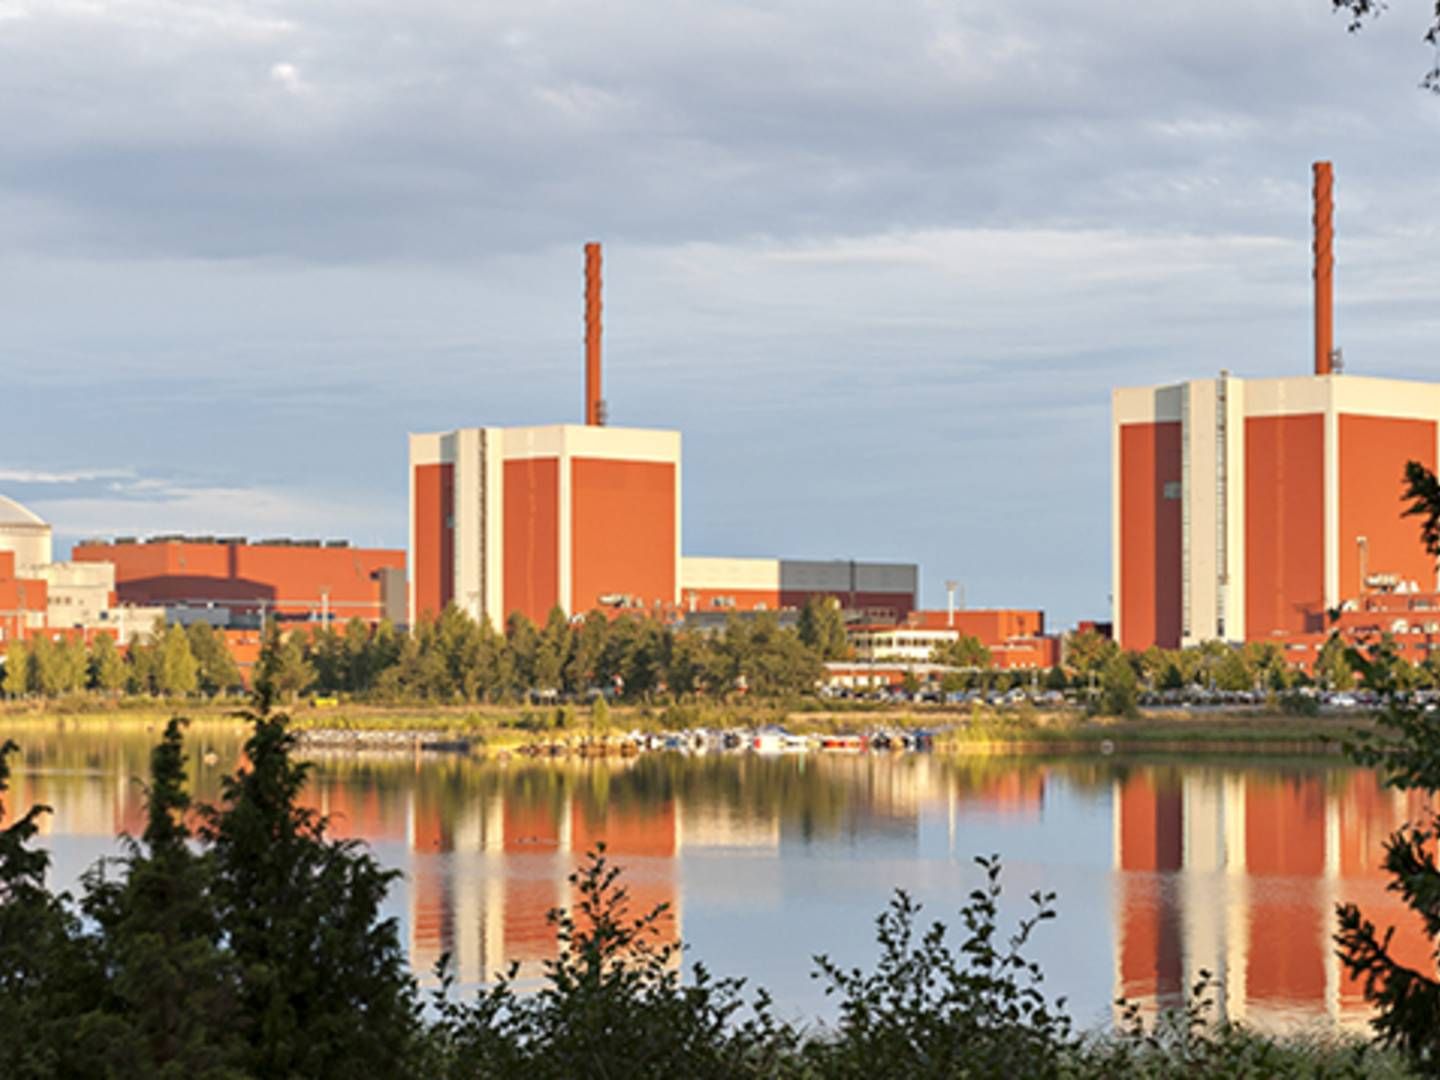 Rusland leverer omkring ti procent af Finlands energi. En del af landets energibehov opfyldes af egne kilder, herunder atomkraft. På billedet ses Olkiluoto-atomkraftværket i Eurajoki i det vestlige Finland. | Foto: PR / TVO